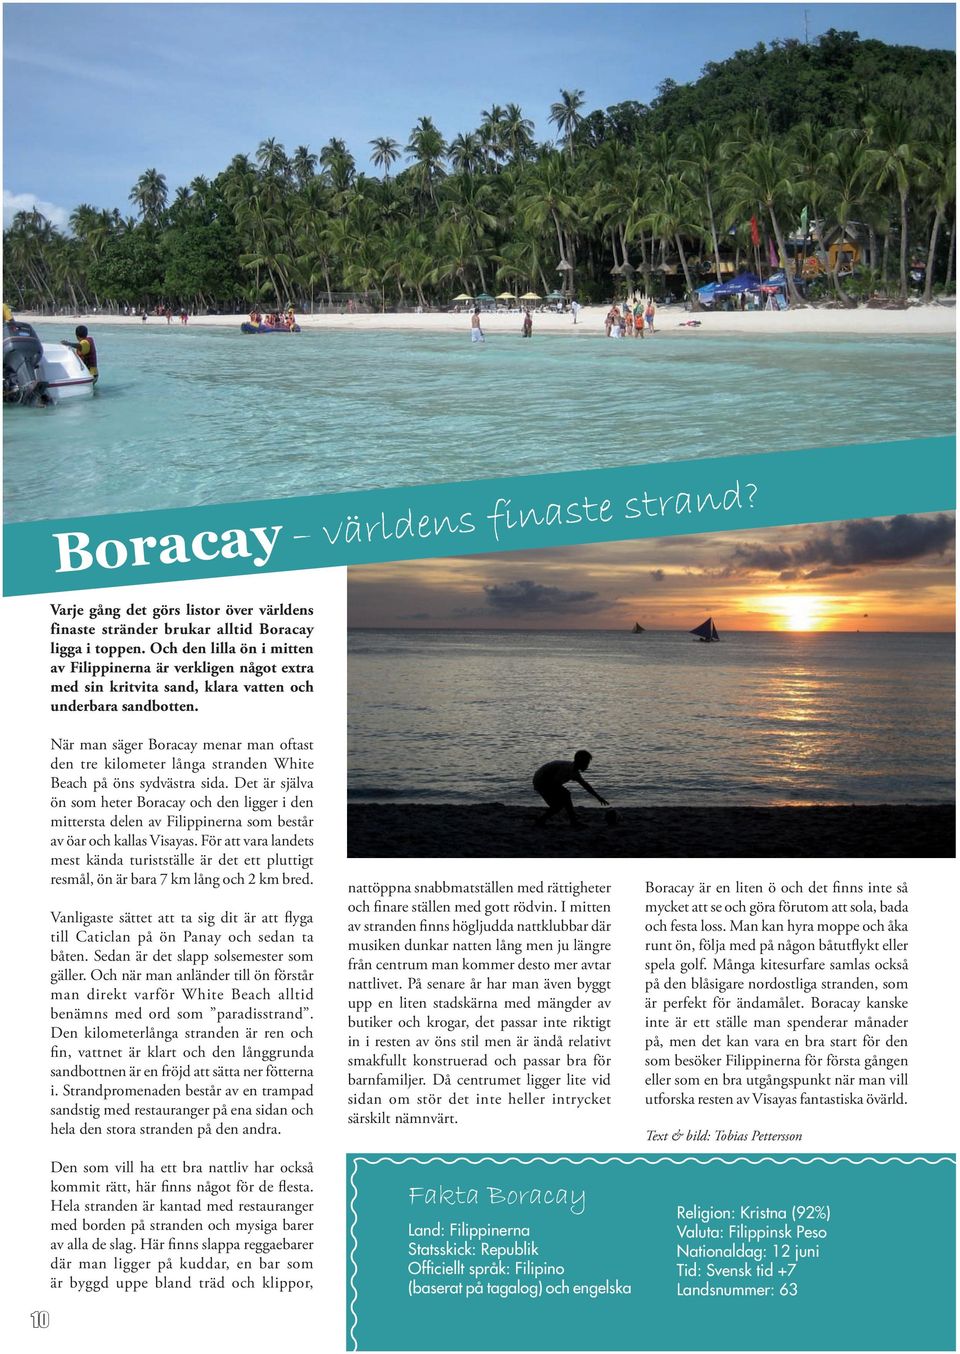 10 När man säger Boracay menar man oftast den tre kilometer långa stranden White Beach på öns sydvästra sida.